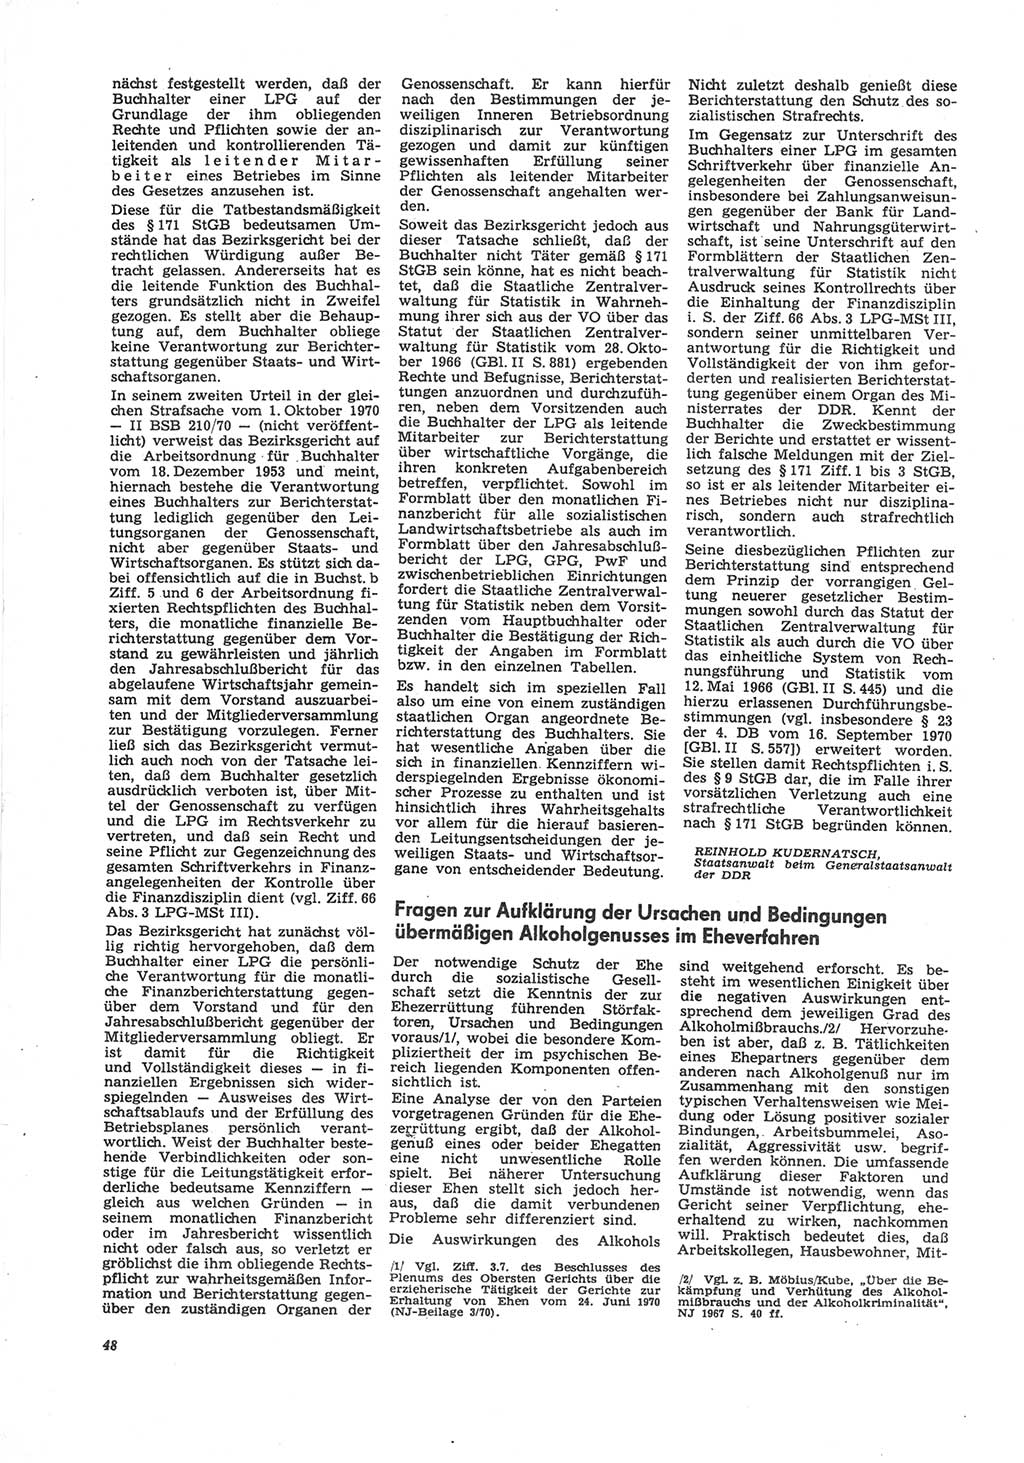 Neue Justiz (NJ), Zeitschrift für Recht und Rechtswissenschaft [Deutsche Demokratische Republik (DDR)], 25. Jahrgang 1971, Seite 48 (NJ DDR 1971, S. 48)